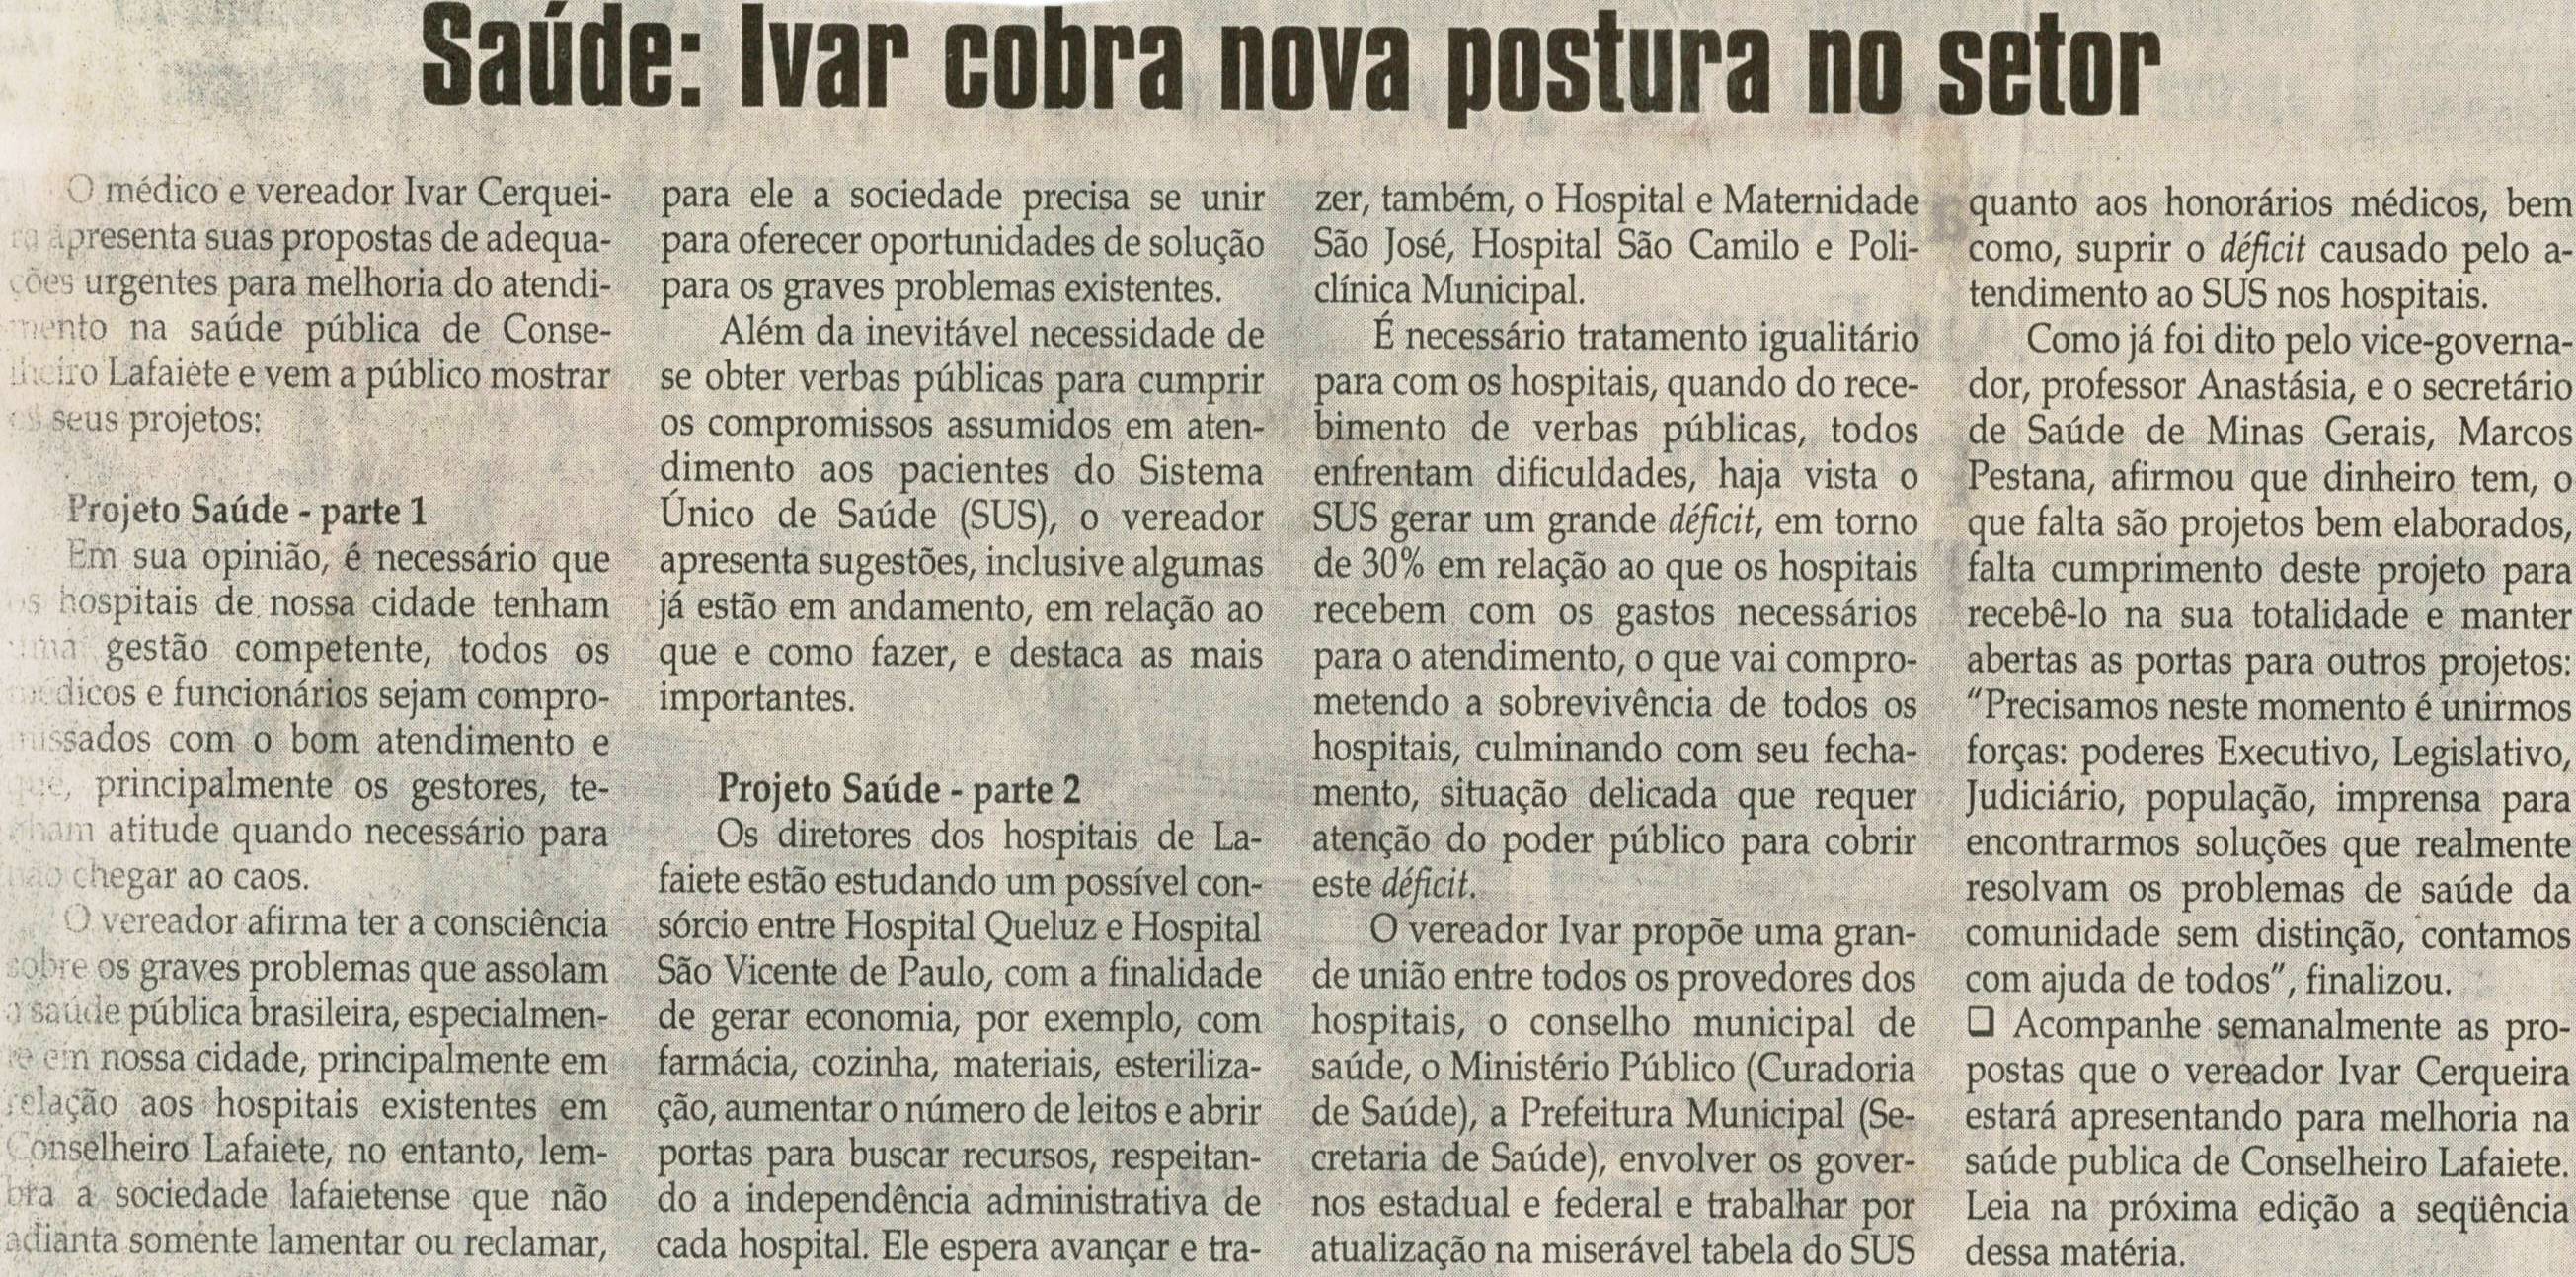 Saúde Ivar cobra nova postura no setor. Jornal Correio da Cidade, Conselheiro Lafaiete, 06 jun. 2009, p. 02.